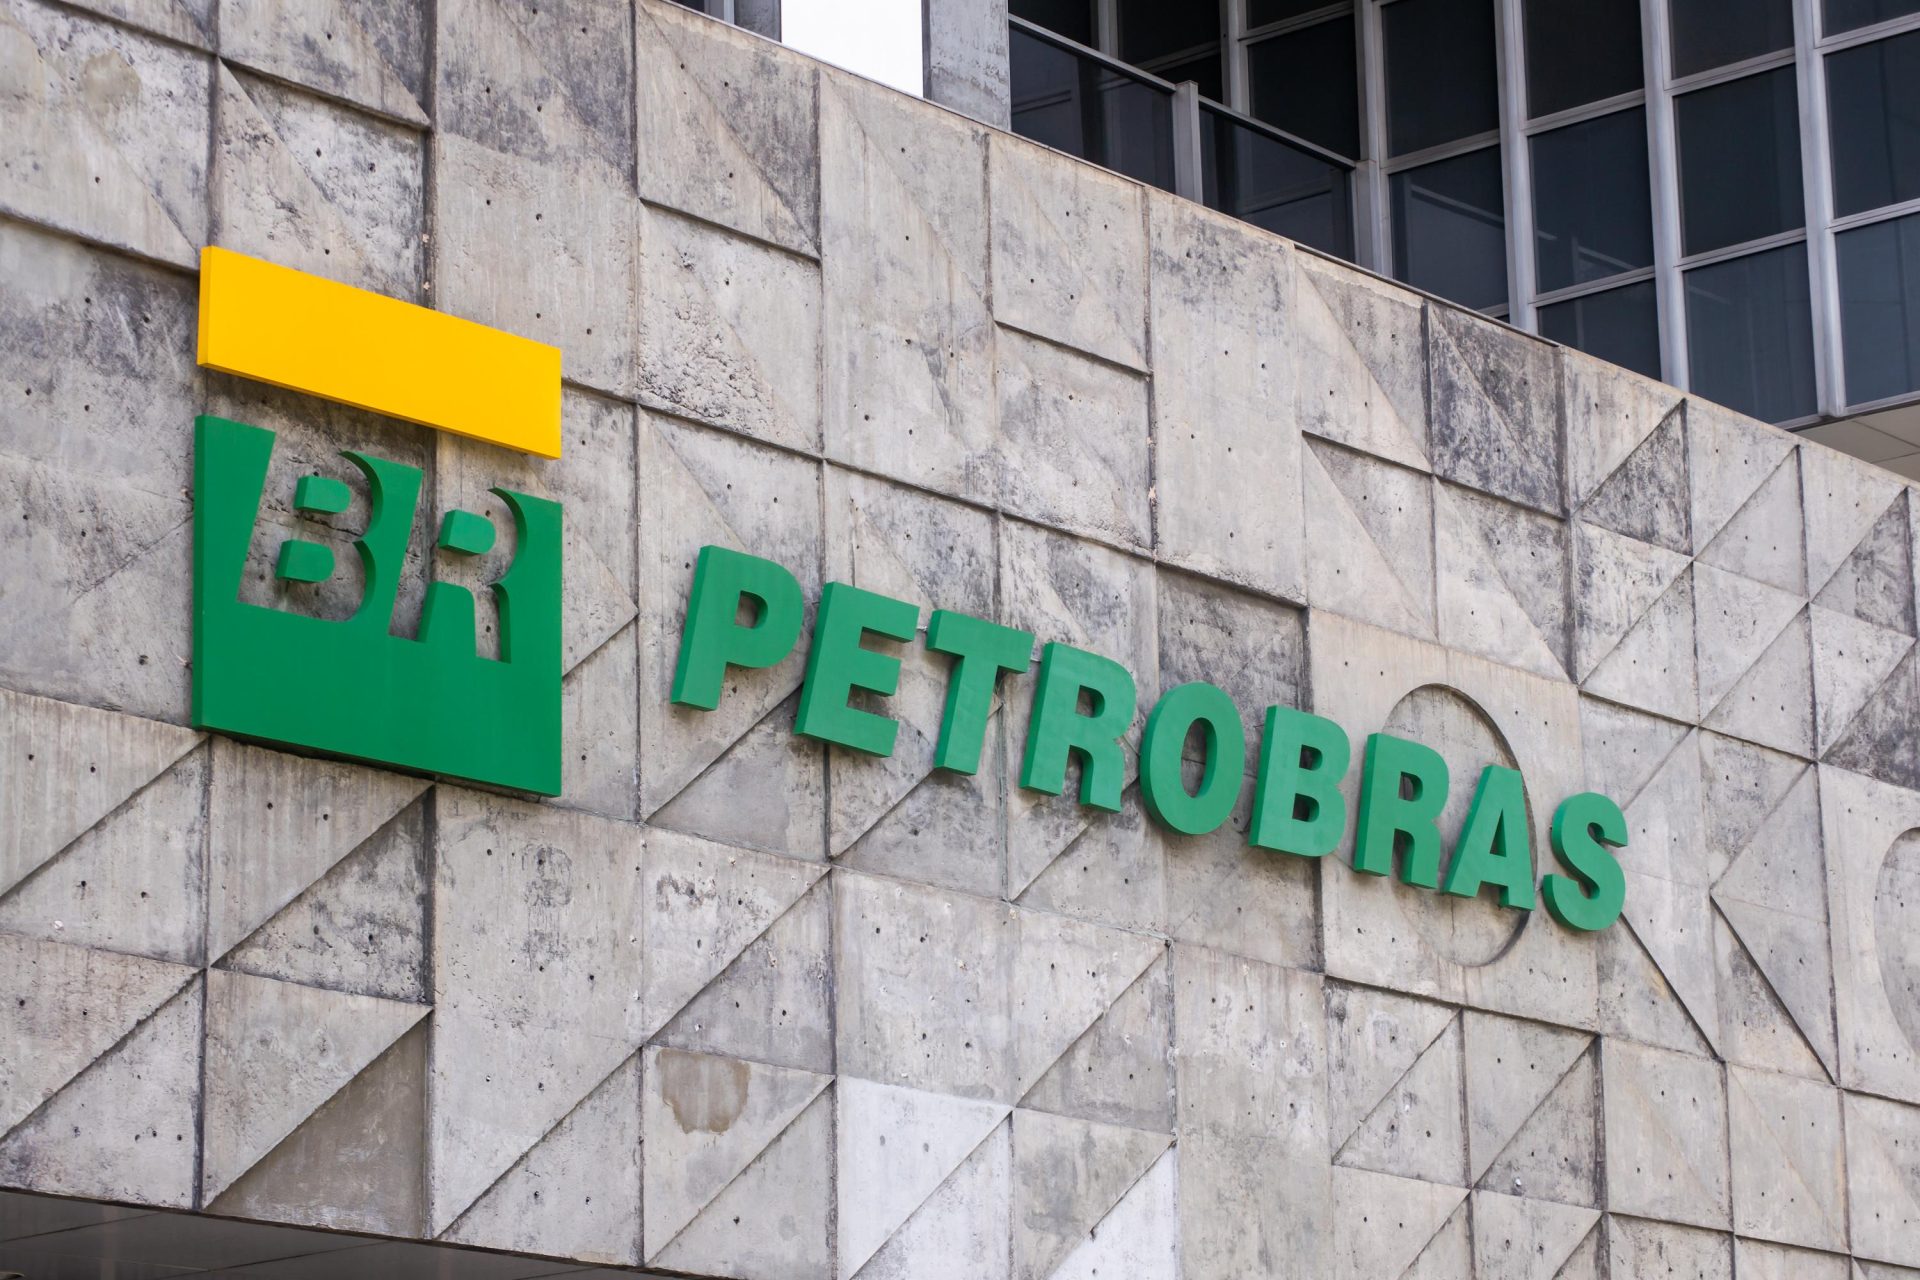 Petrobras anuncia nova politica de preços da gasolina e diesel - Foto: Davi Corrêa/Futura Press/Estadão Conteúdo